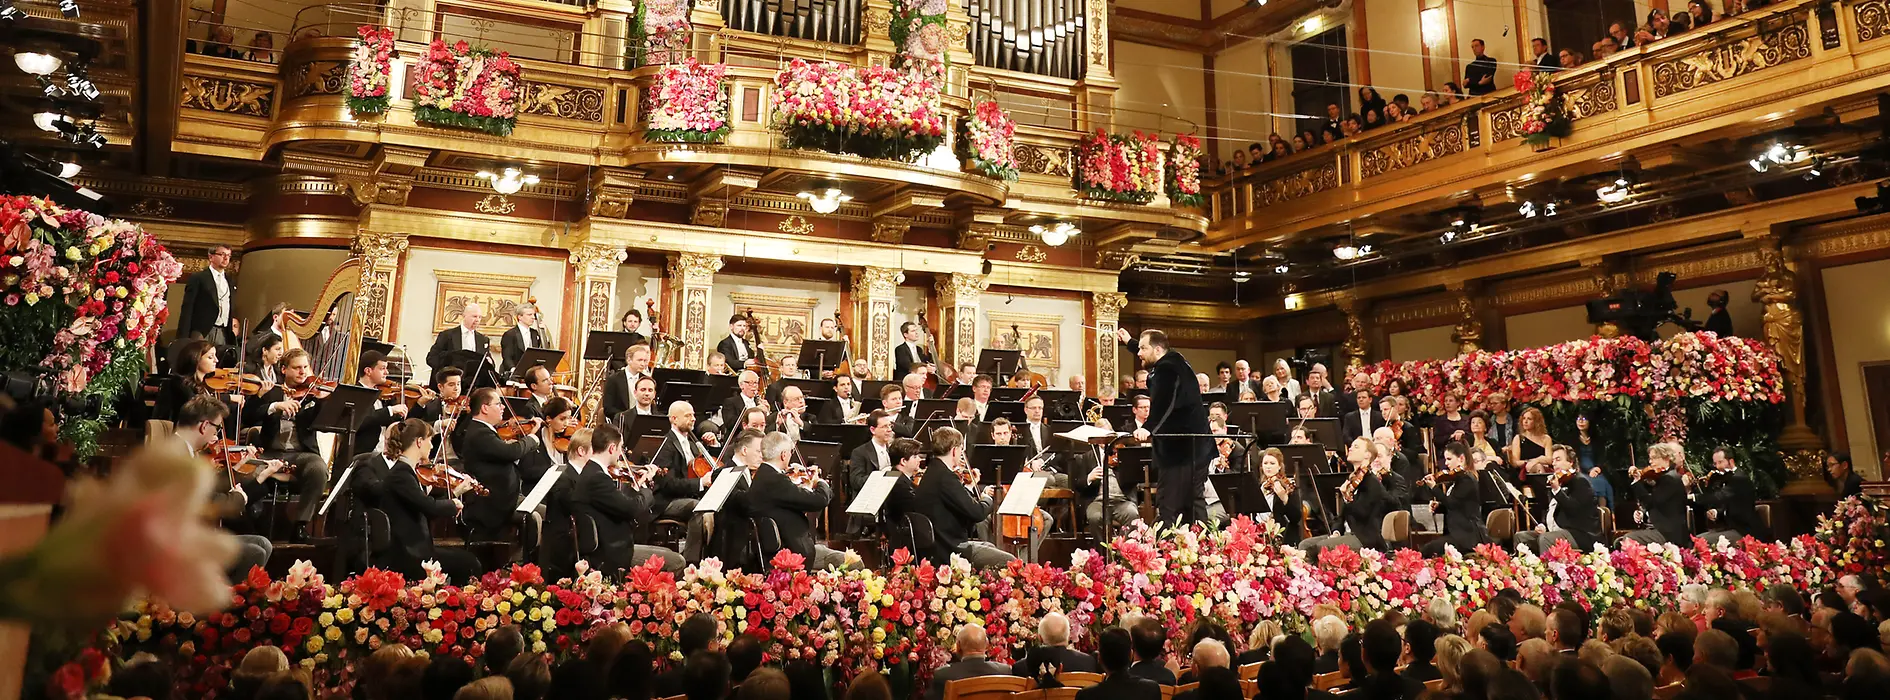 Wiener Musikverein (Vienna Philharmonic Orchestra)